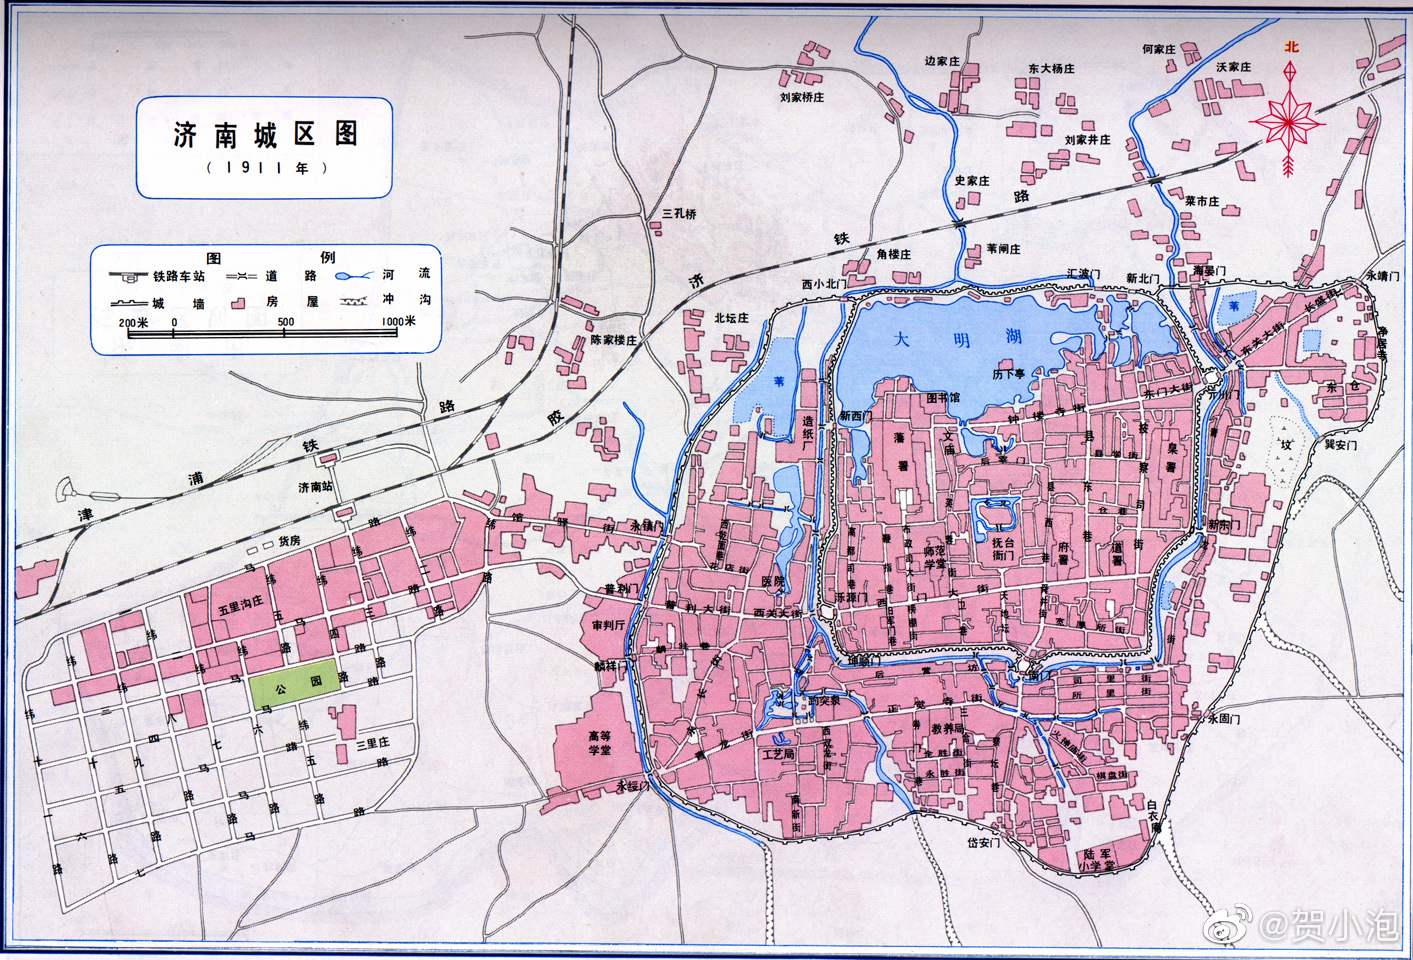 1911年、1932年、1948年济南城区图